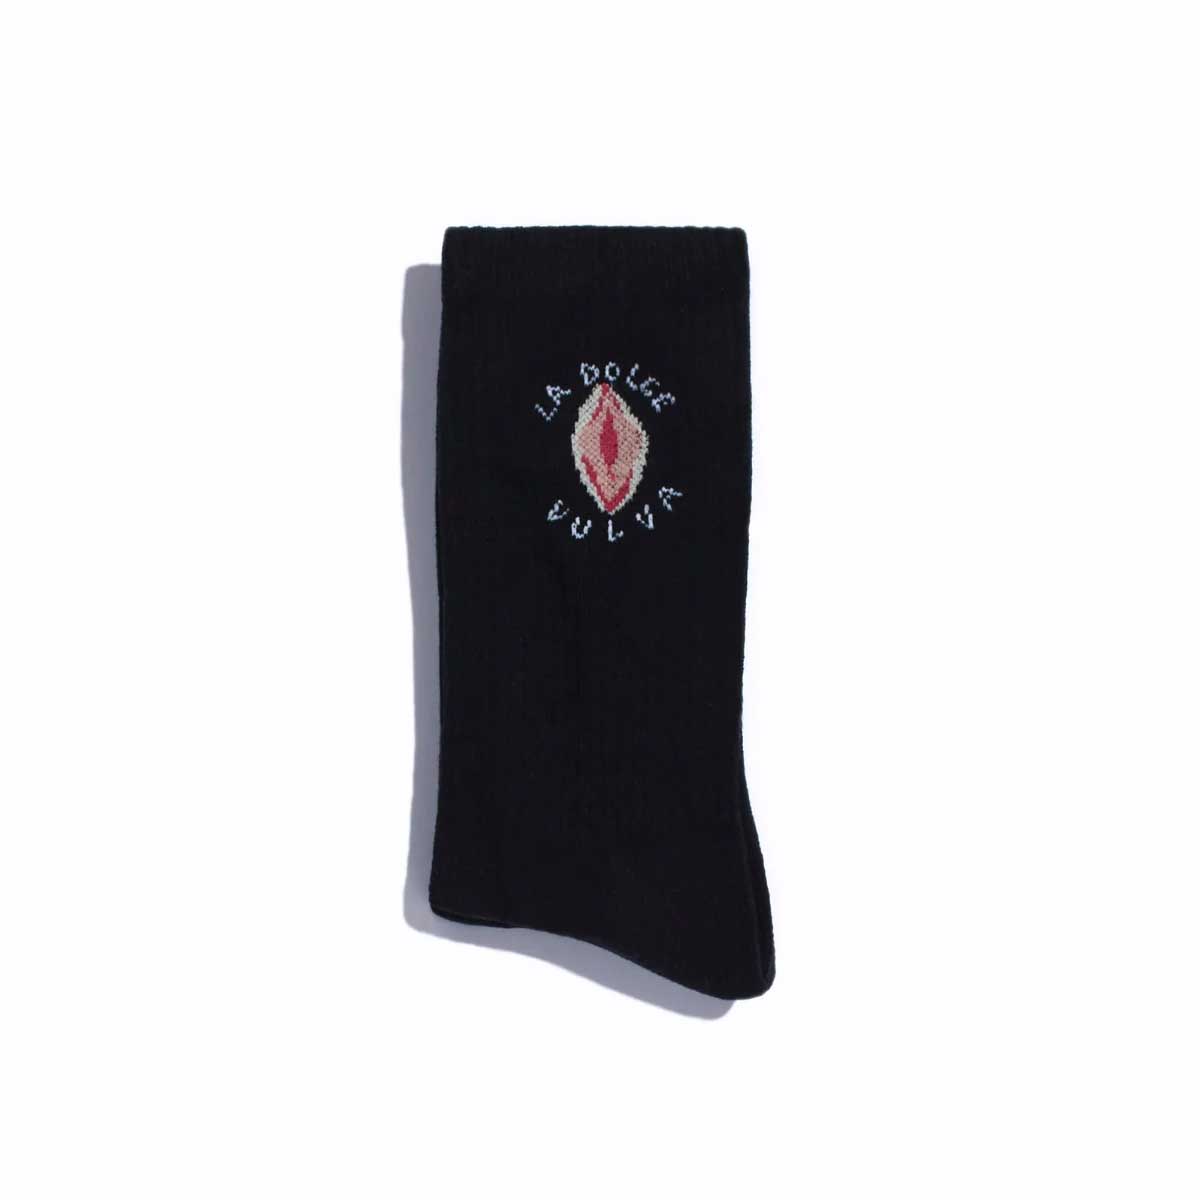 La Dolce Vulva Socken in schwarz mit Aufschrift und Vulva Stickerei.